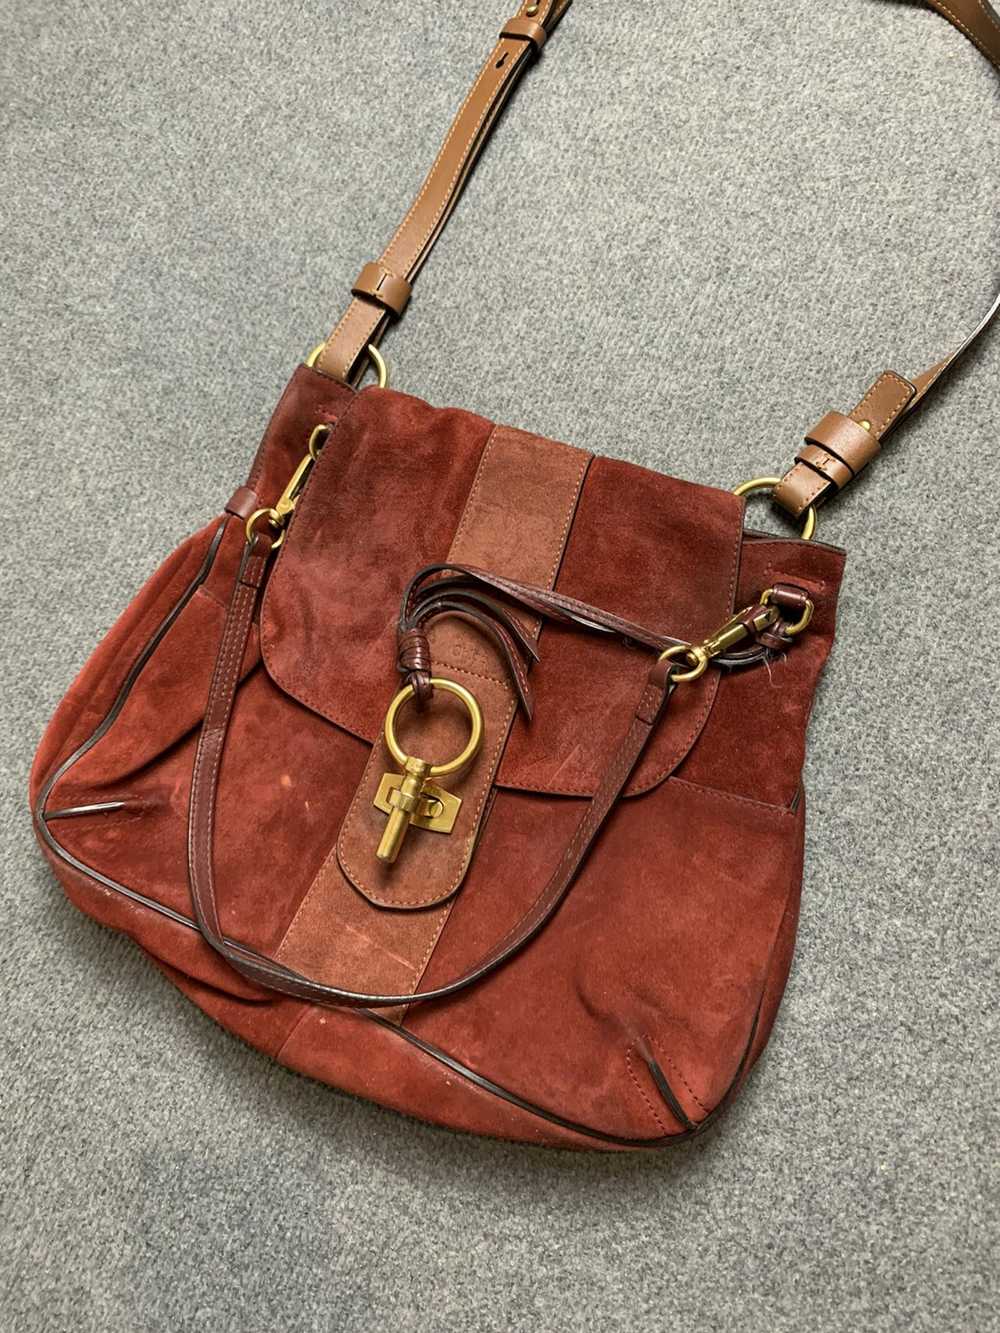 Chloe × Designer × Vintage Chloe leather suede bag - image 2